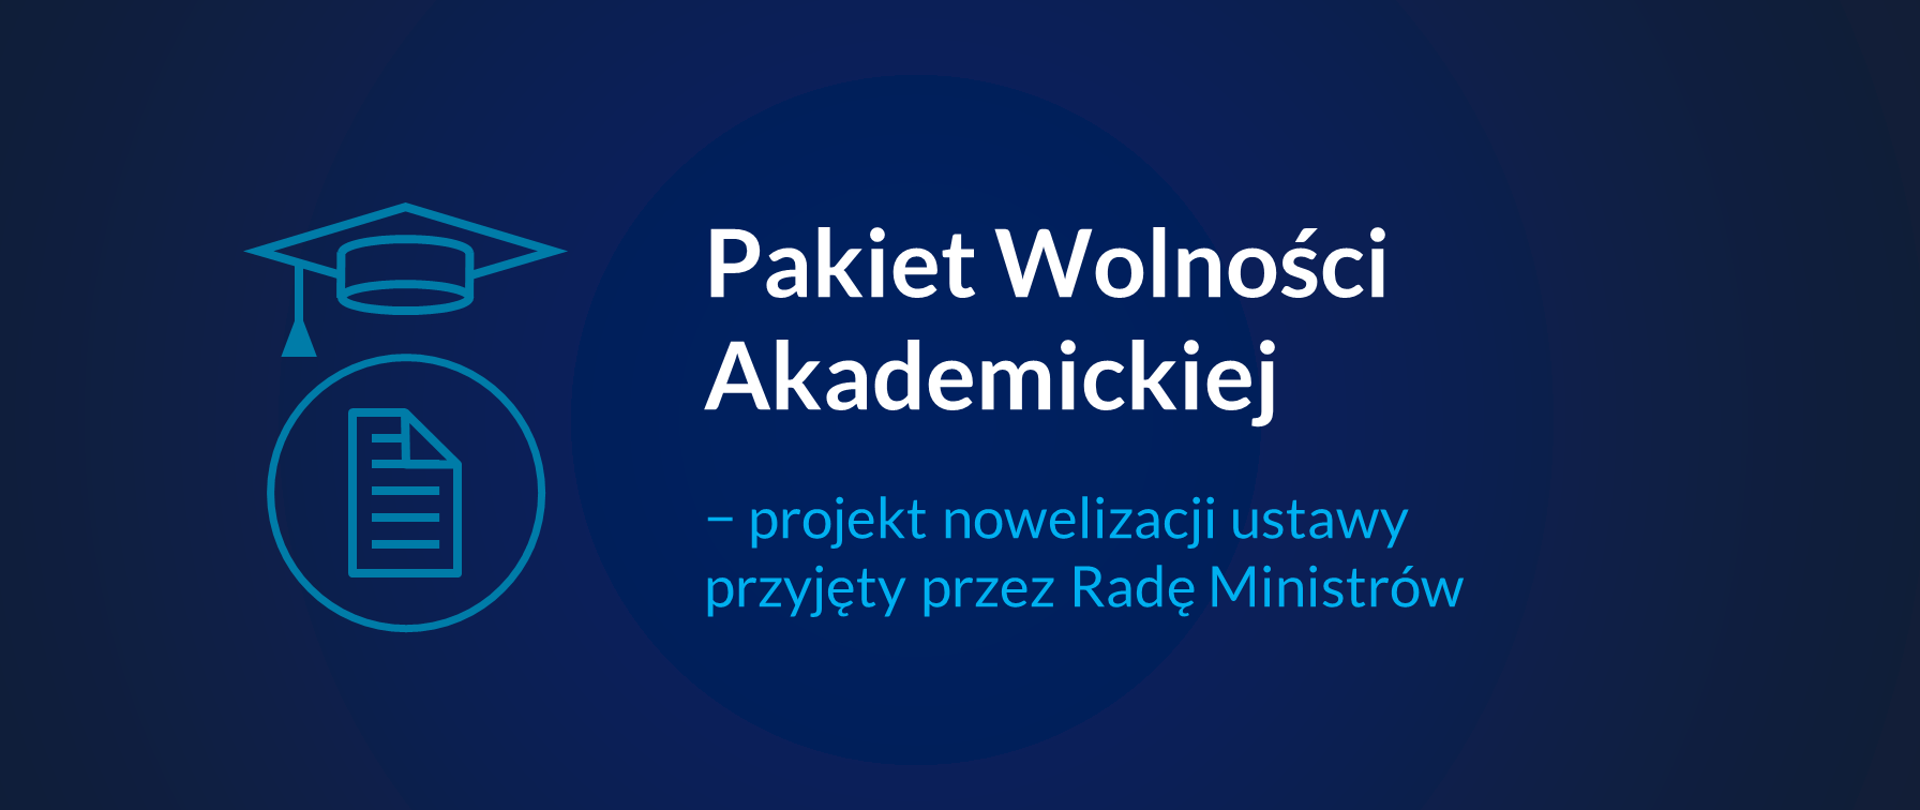 Grafika z tekstem: "Pakiet Wolności Akademickiej – projekt nowelizacji ustawy przyjęty przez Radę Ministrów"